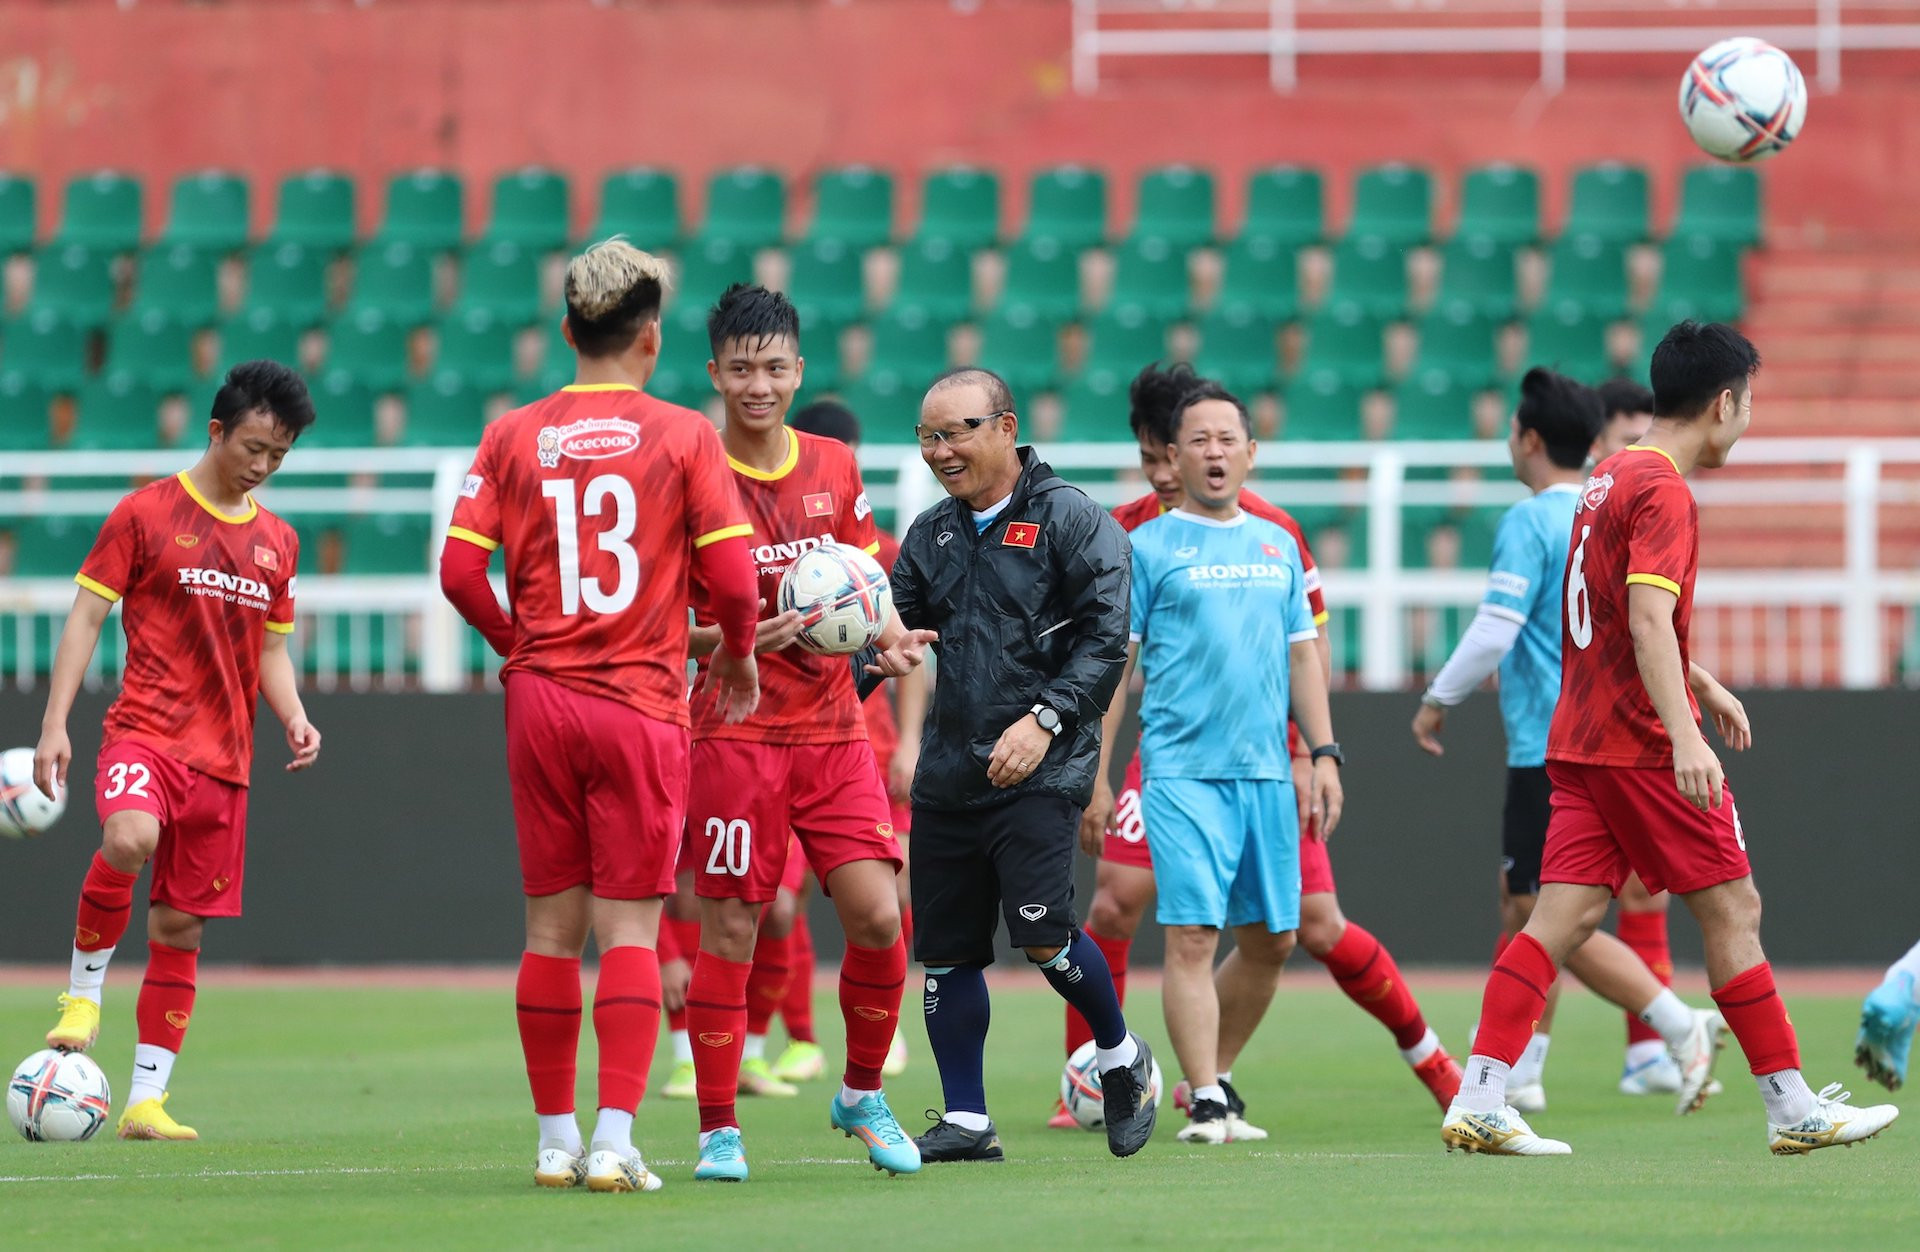 Tuy nhiên khi quay trở lại sân cùng các học trò ở tuyển Việt Nam, HLV người Hàn Quốc thay đổi hoàn toàn khi tỏ ra vui vẻ suốt buổi tập